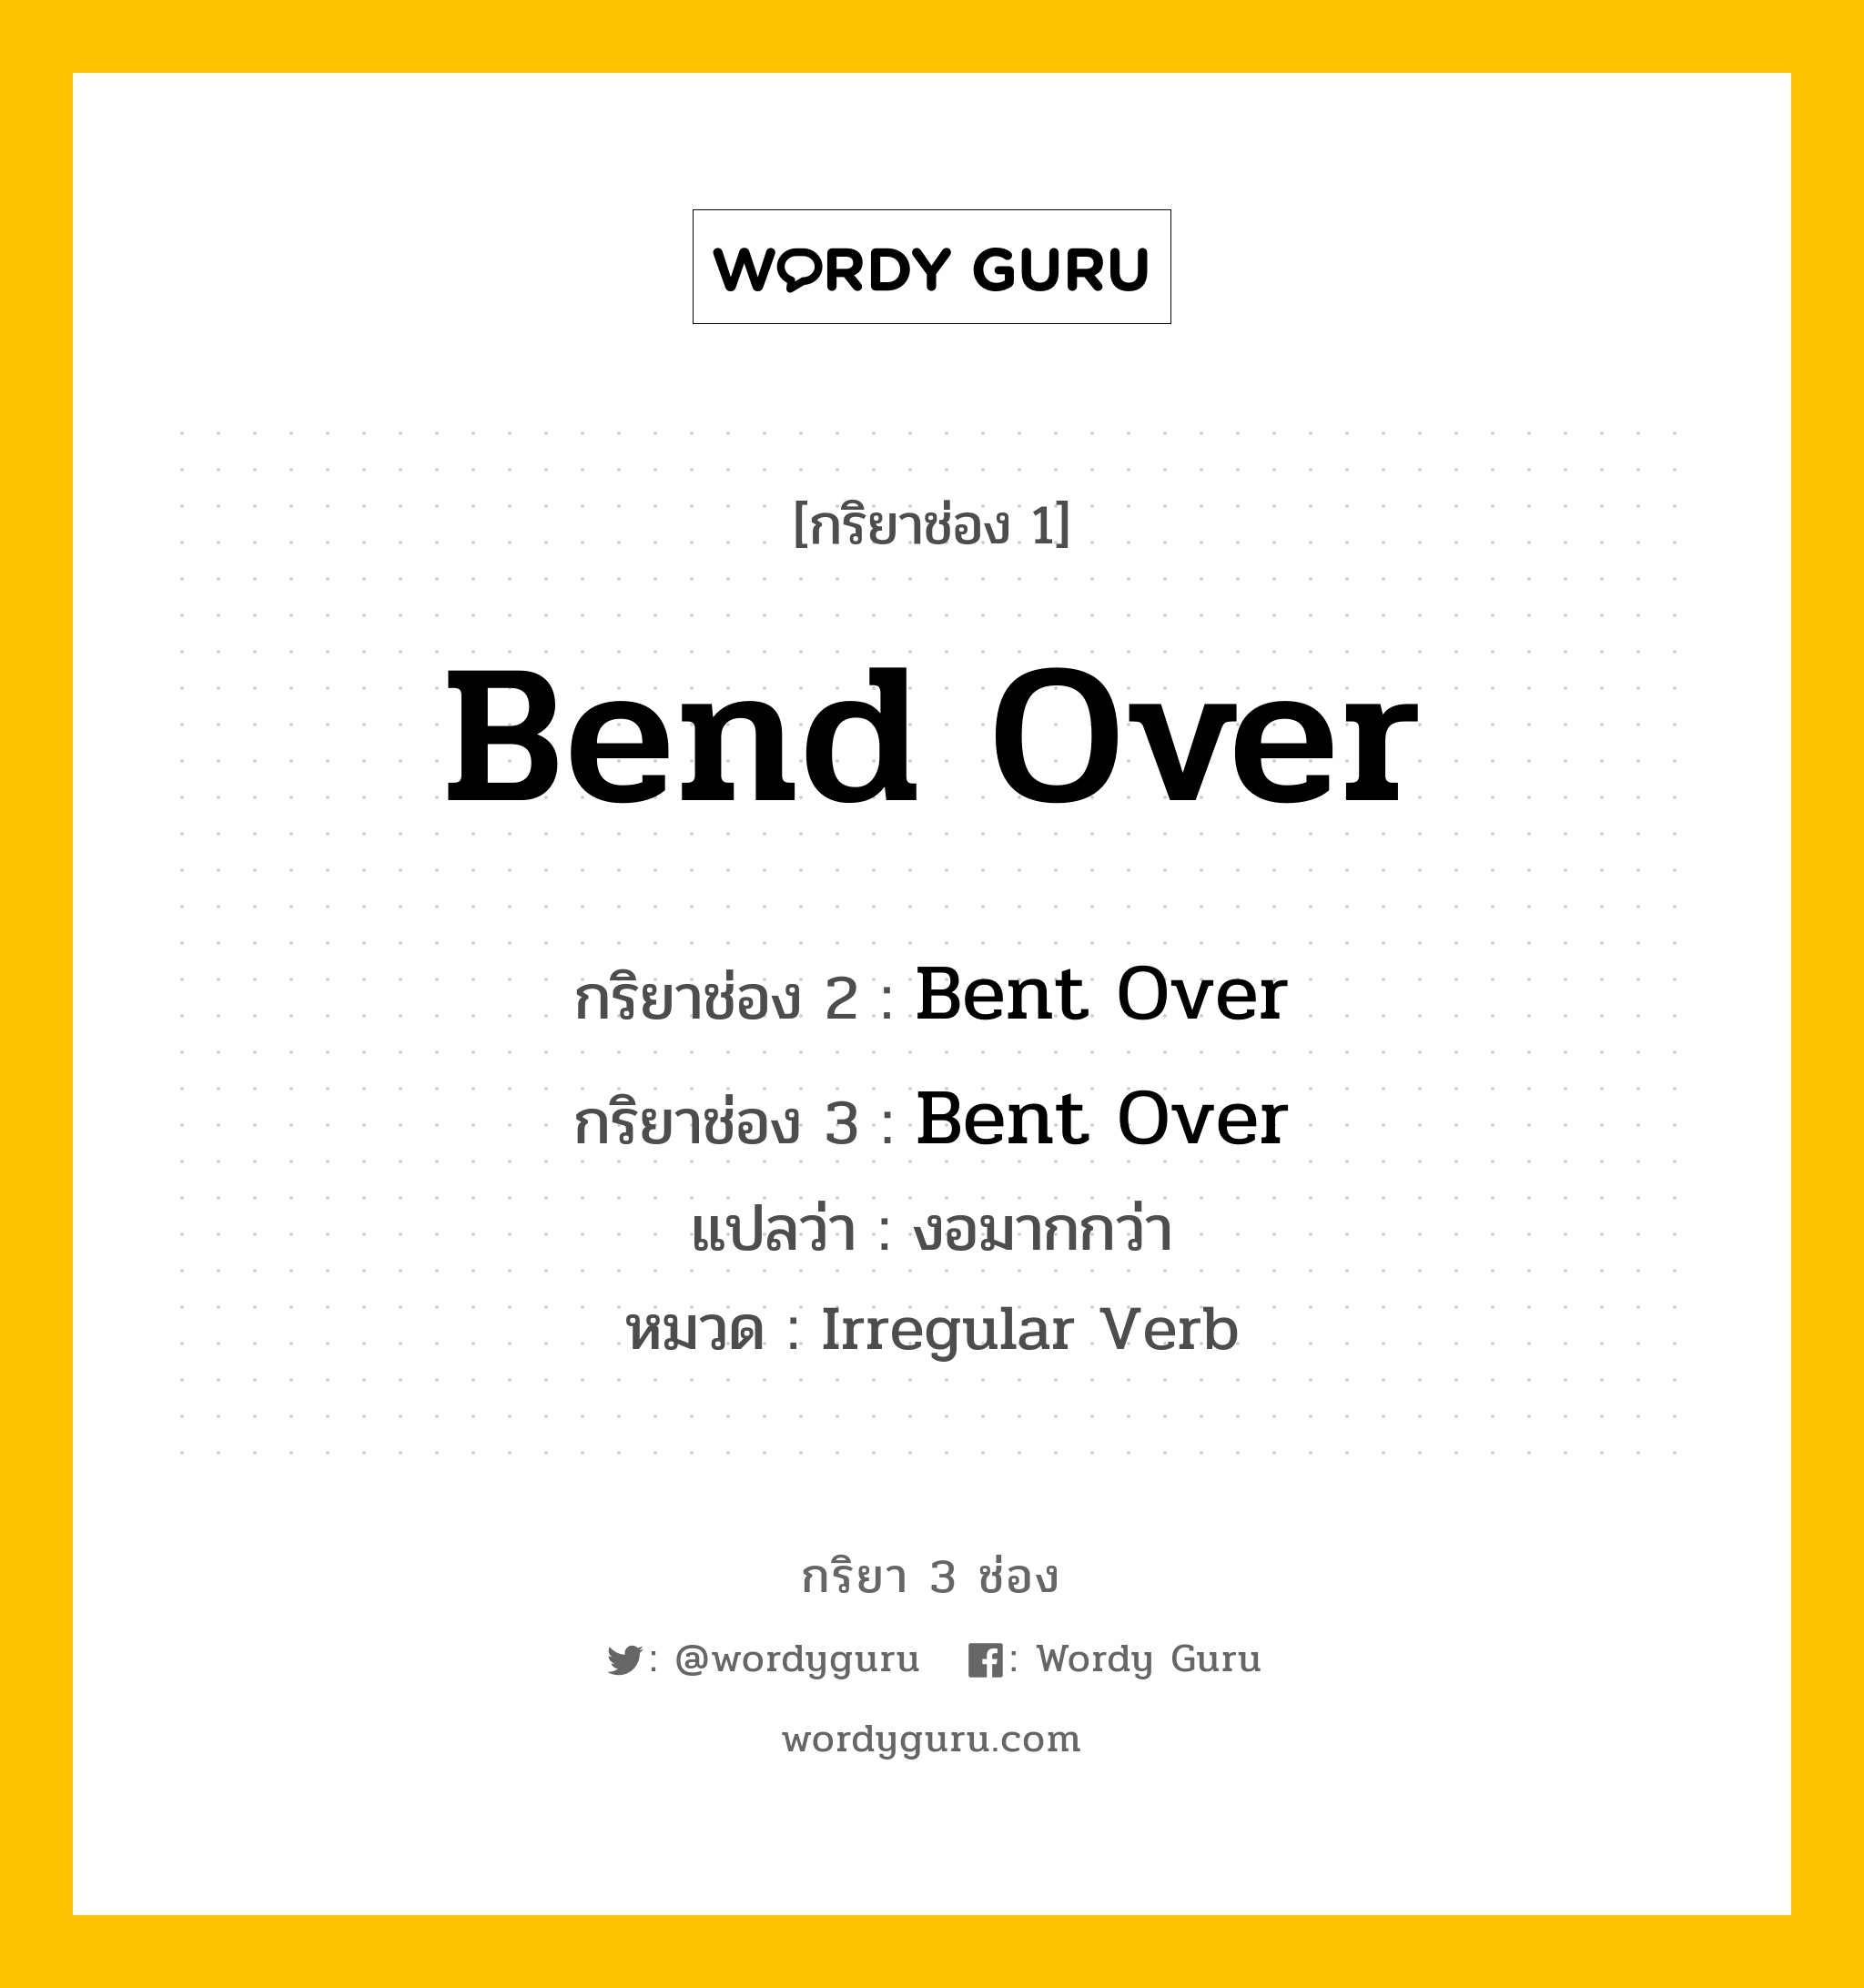 Bend Over มีกริยา 3 ช่องอะไรบ้าง? คำศัพท์ในกลุ่มประเภท Irregular Verb, กริยาช่อง 1 Bend Over กริยาช่อง 2 Bent Over กริยาช่อง 3 Bent Over แปลว่า งอมากกว่า หมวด Irregular Verb หมวด Irregular Verb